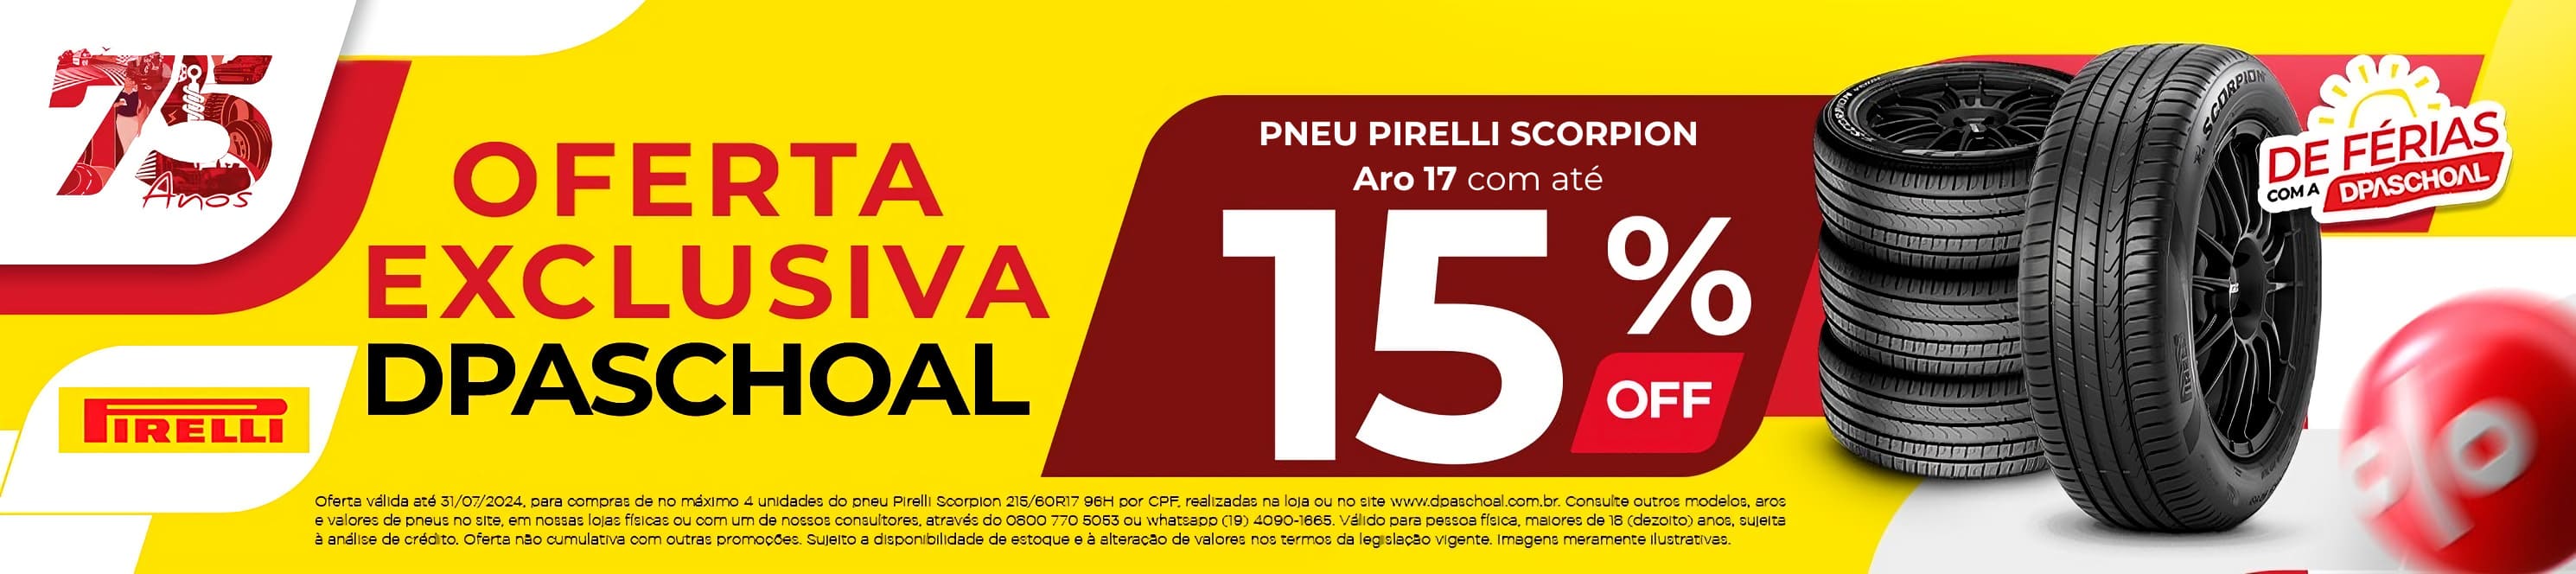 Aro 17 - Pirelli